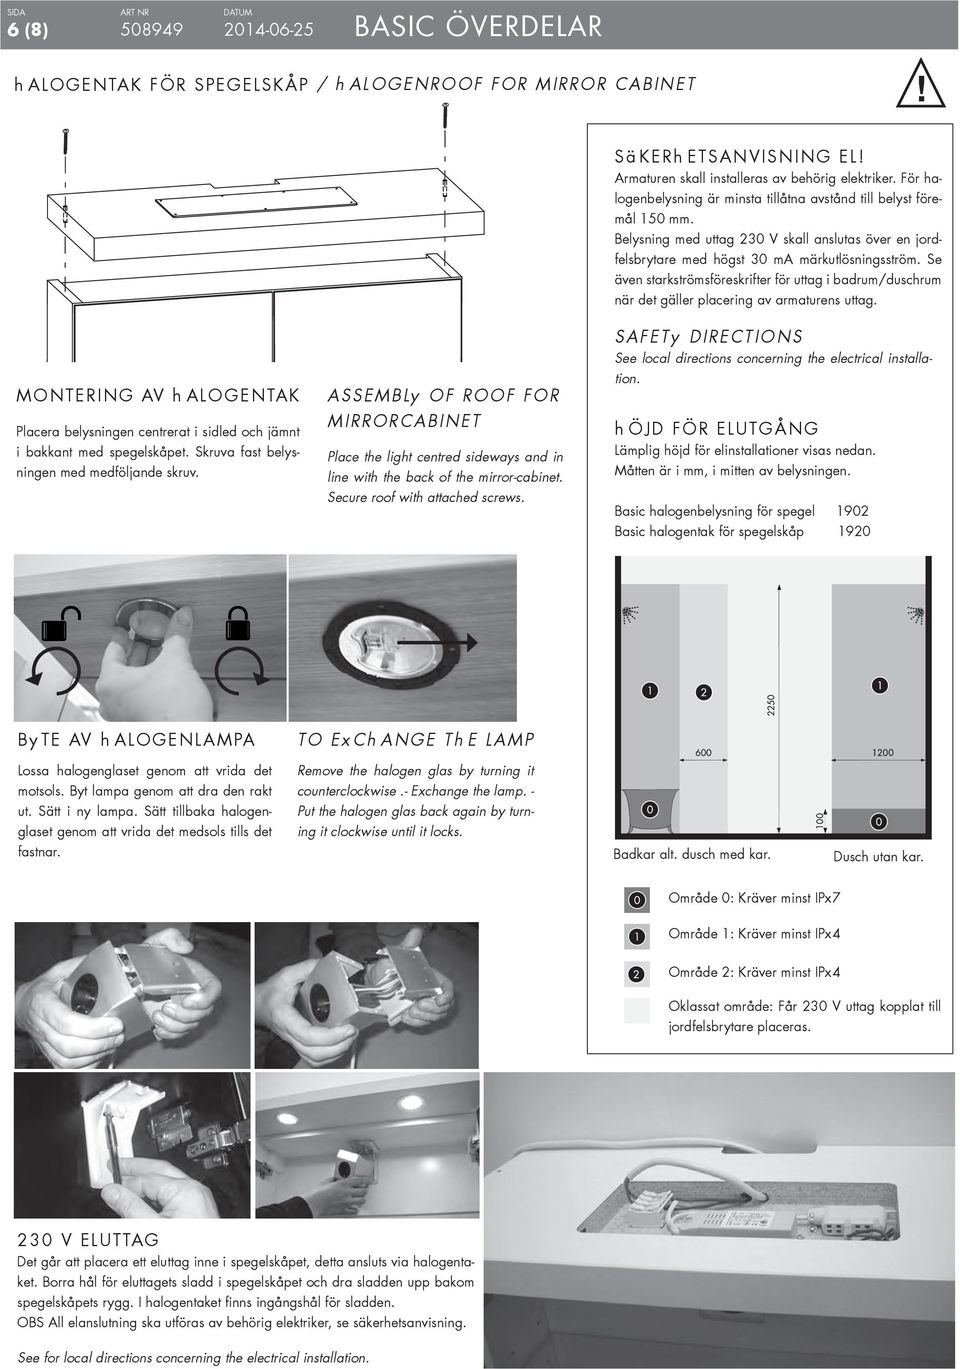 Se även starkströmsföreskrifter för uttag i badrum/duschrum när det gäller placering av armaturens uttag.